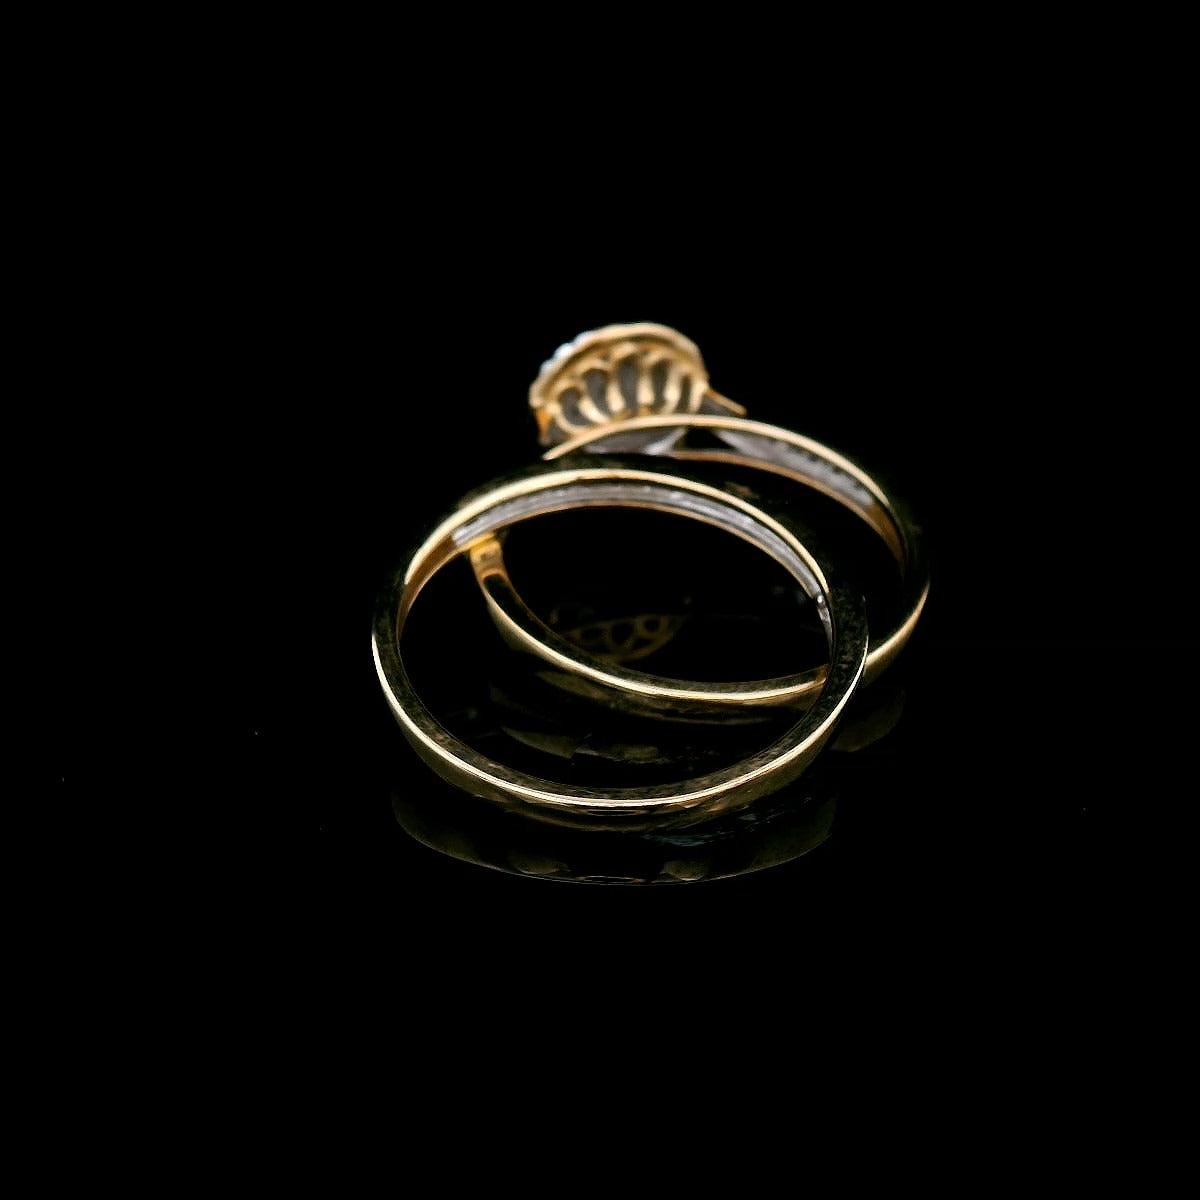 0.50 Carat Diamond Ring Set in 9 Carat Yellow Gold